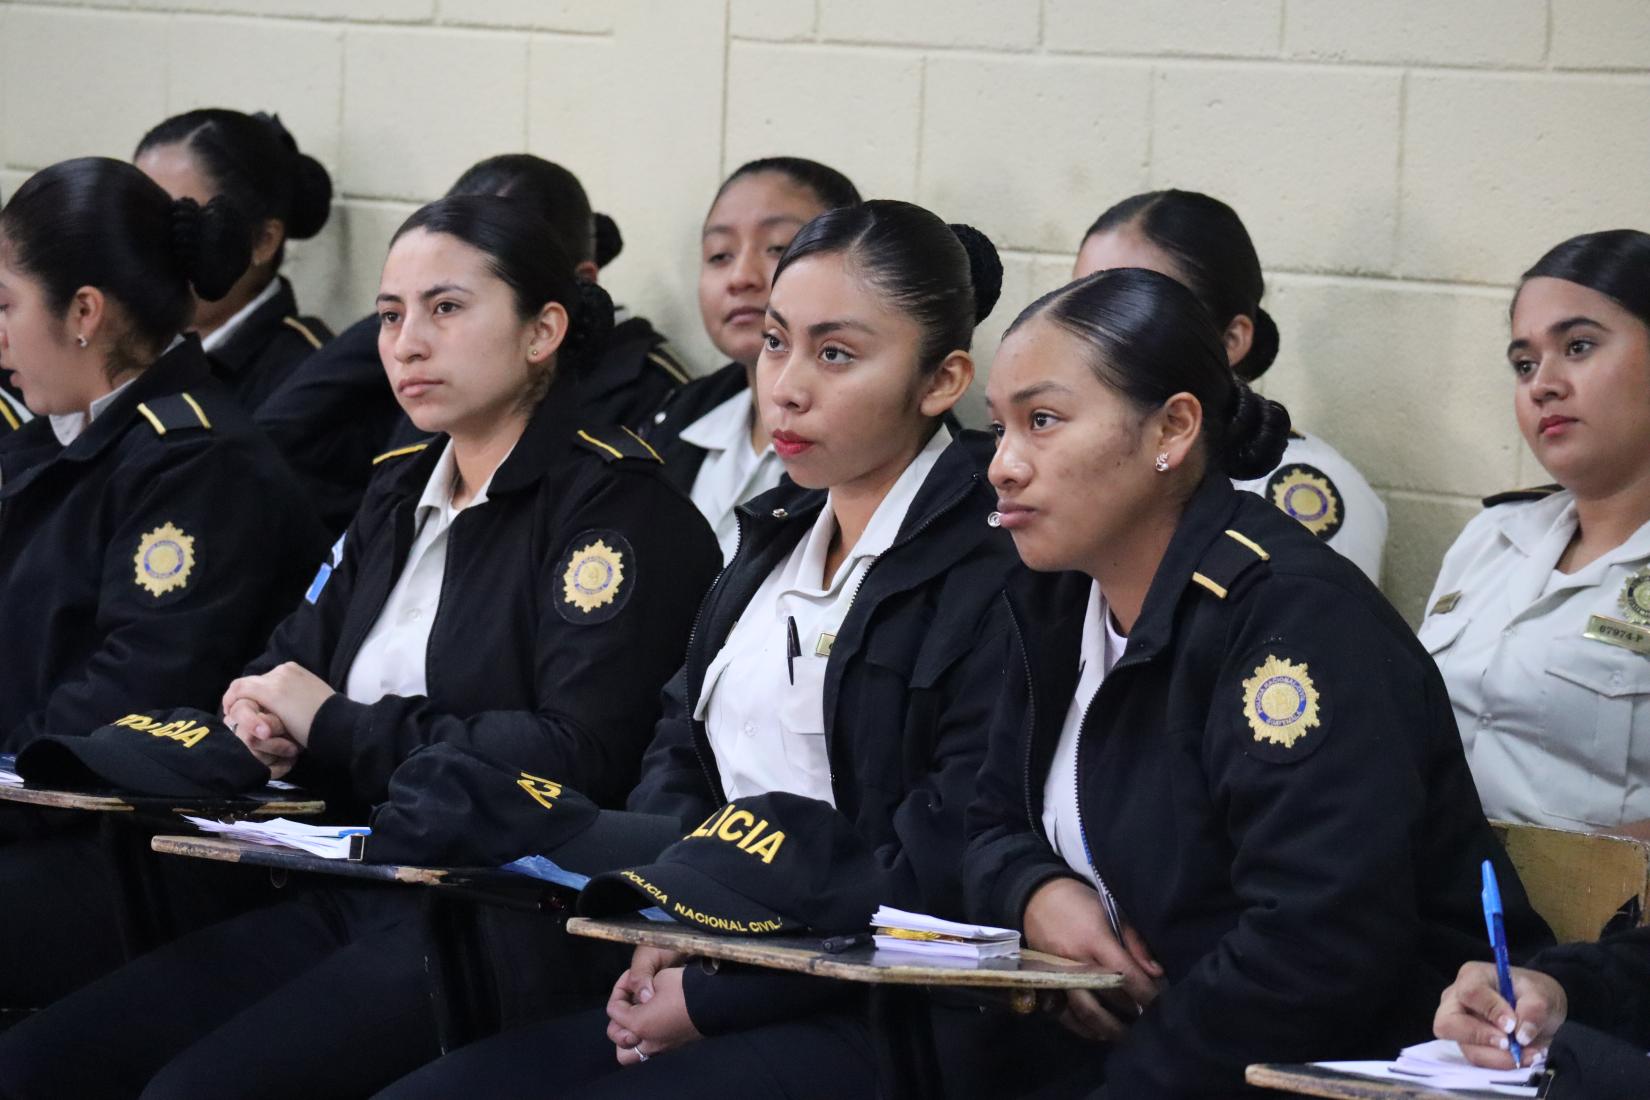 Mujeres policías sentadas atendiendo la clase